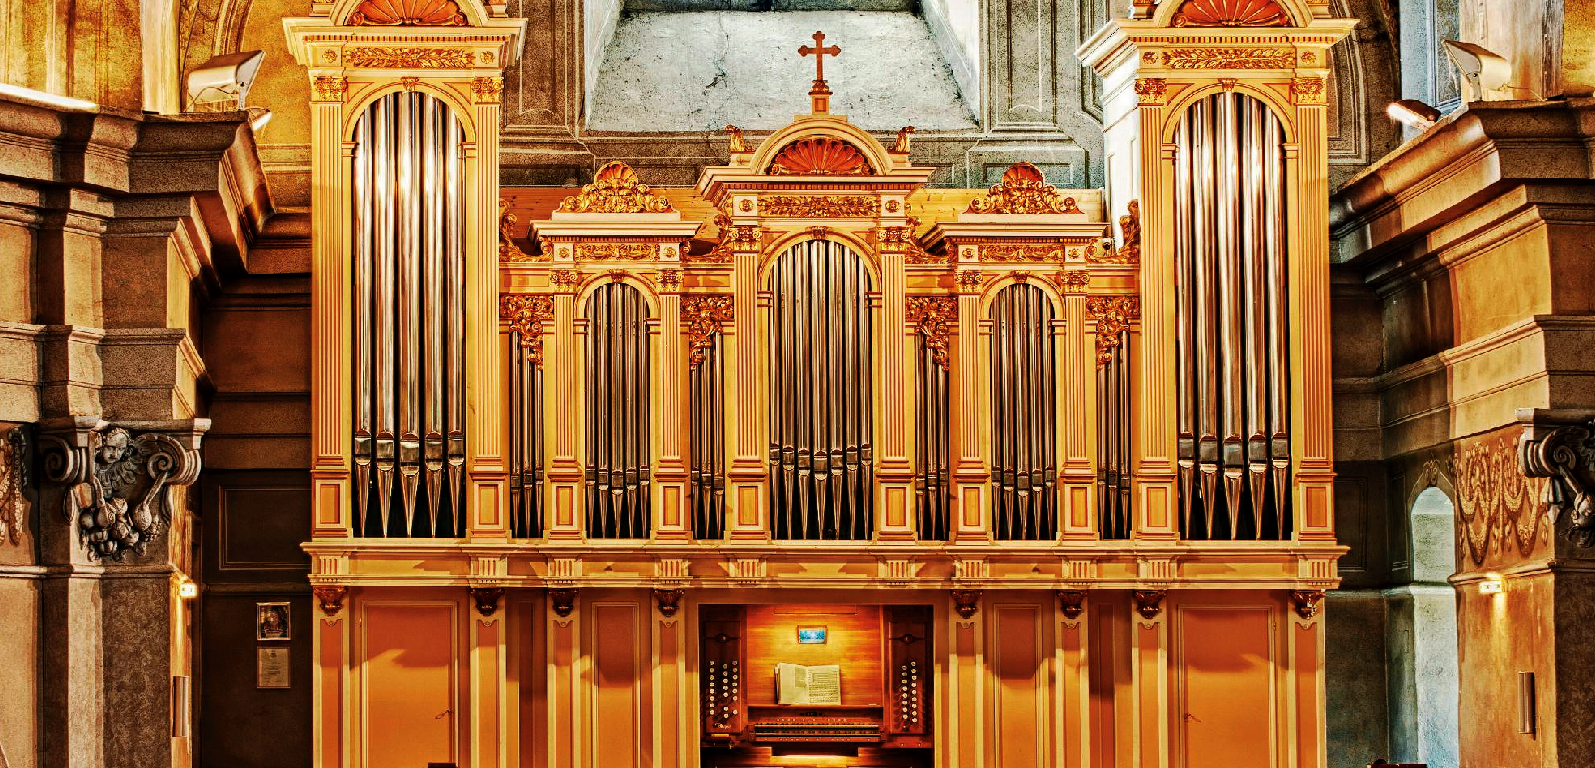 Rieger-Orgel mit 35 Registern – die größte Kirchenorgel des Burgenlandes